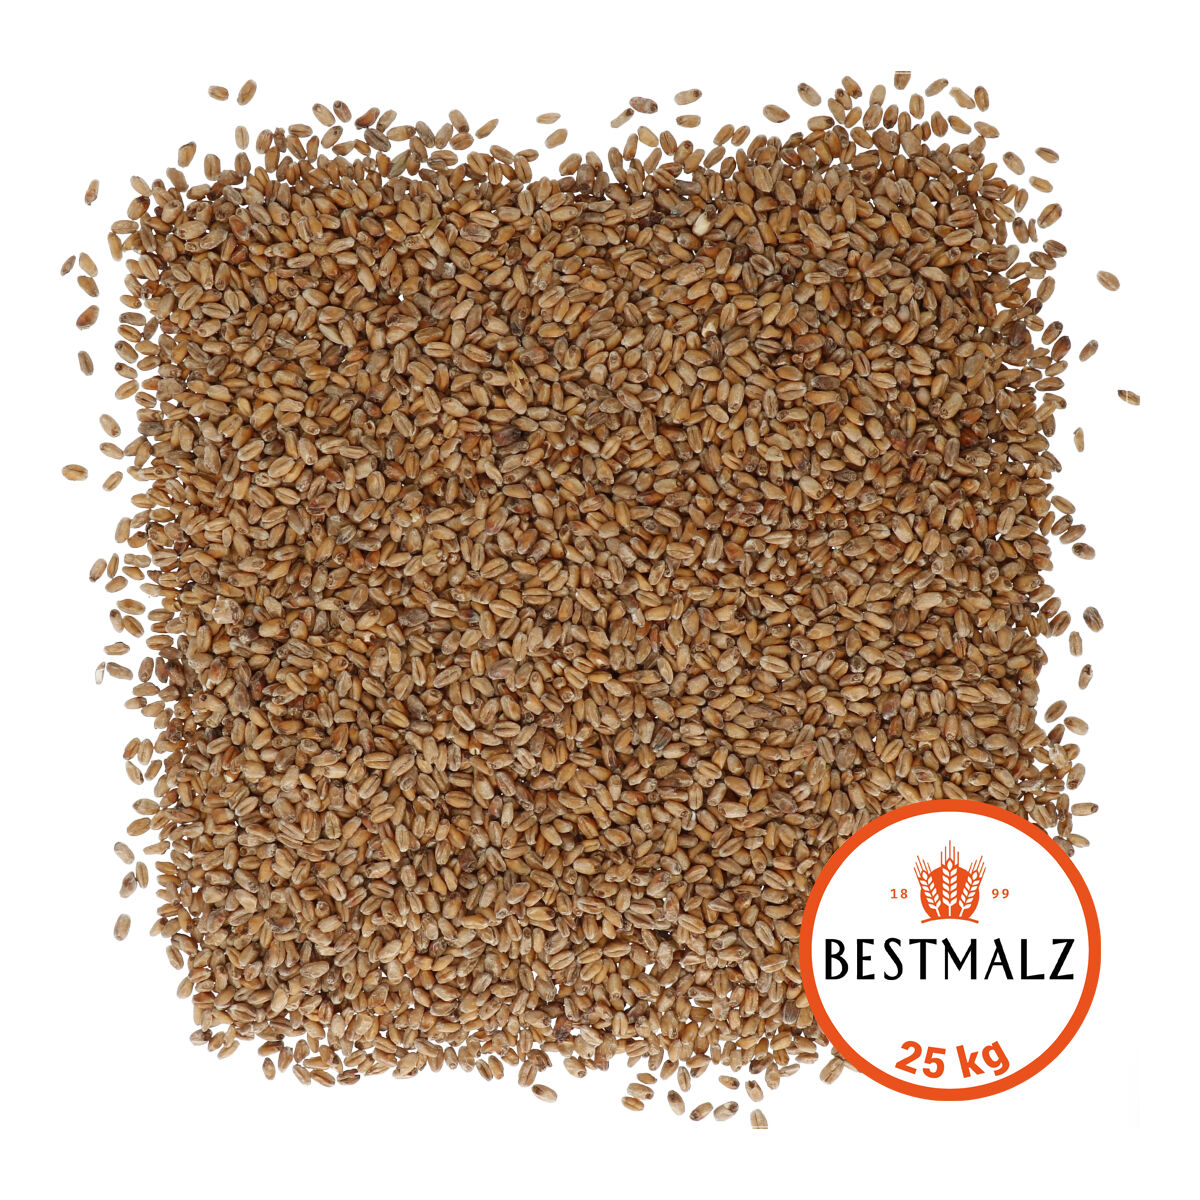 Bestmalz Wheat Malt Dark 25 kg